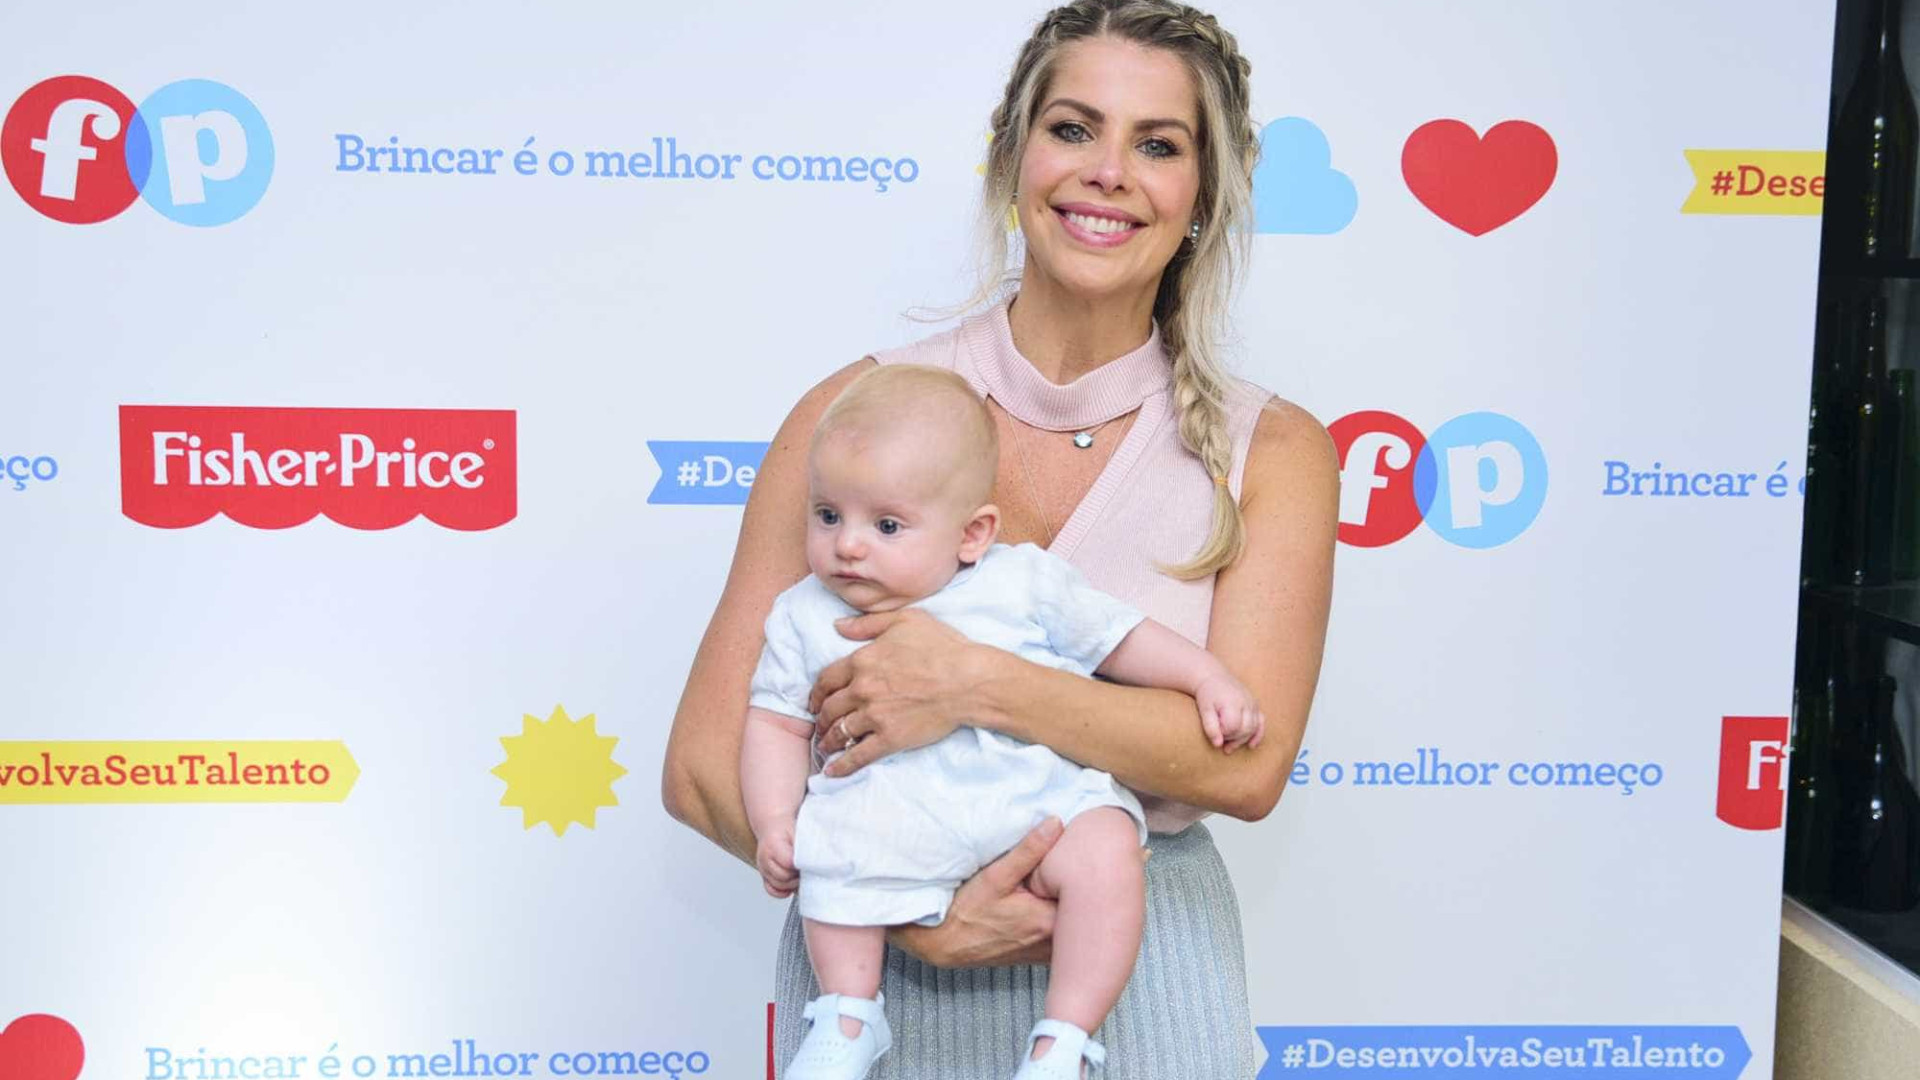 'Doar leite materno é um ato de amor', diz Karina Bacchi